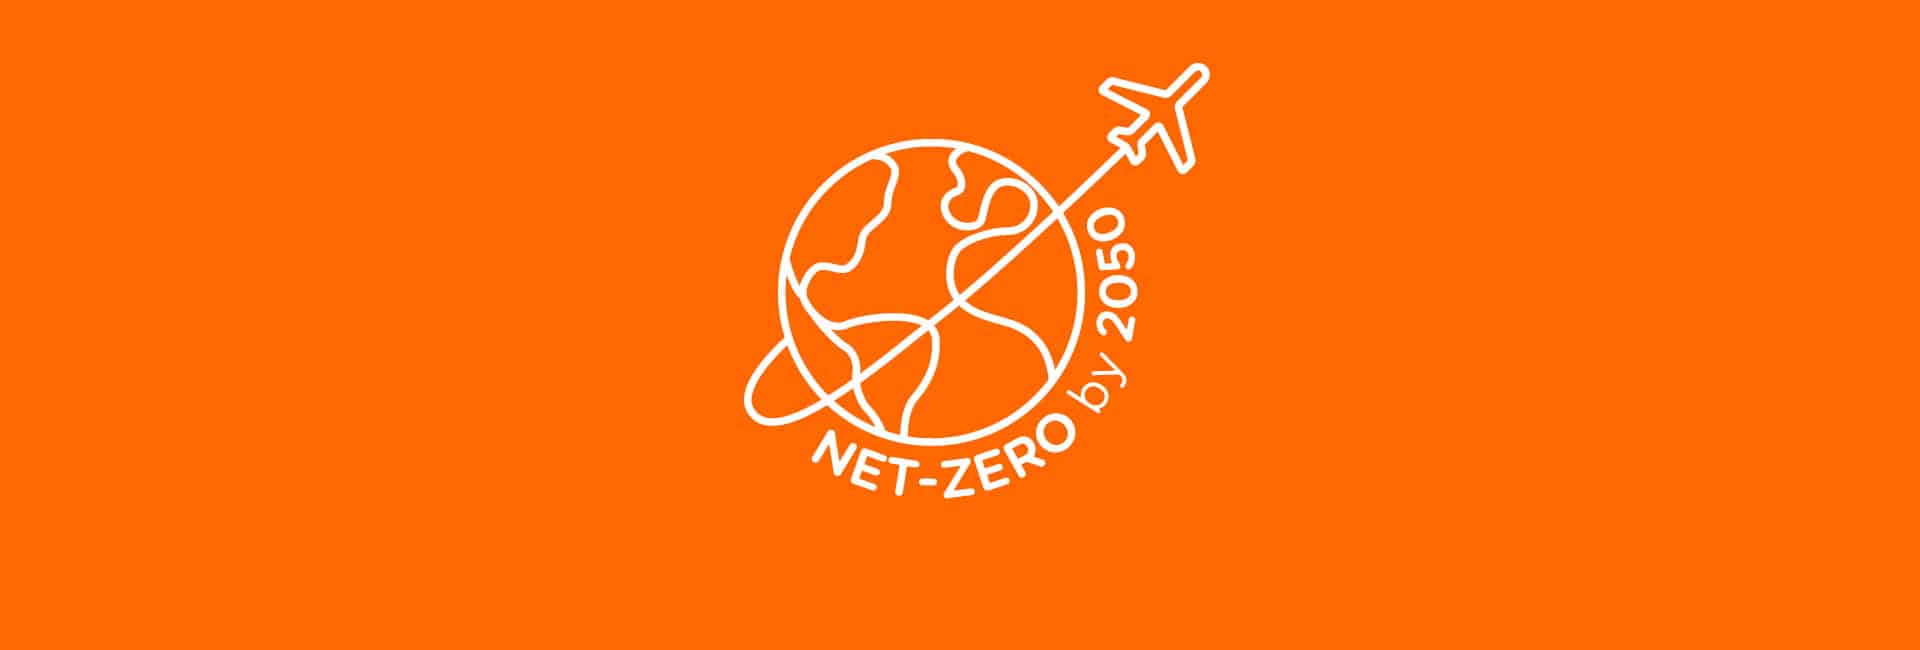 easyJet Net Zero by 2050